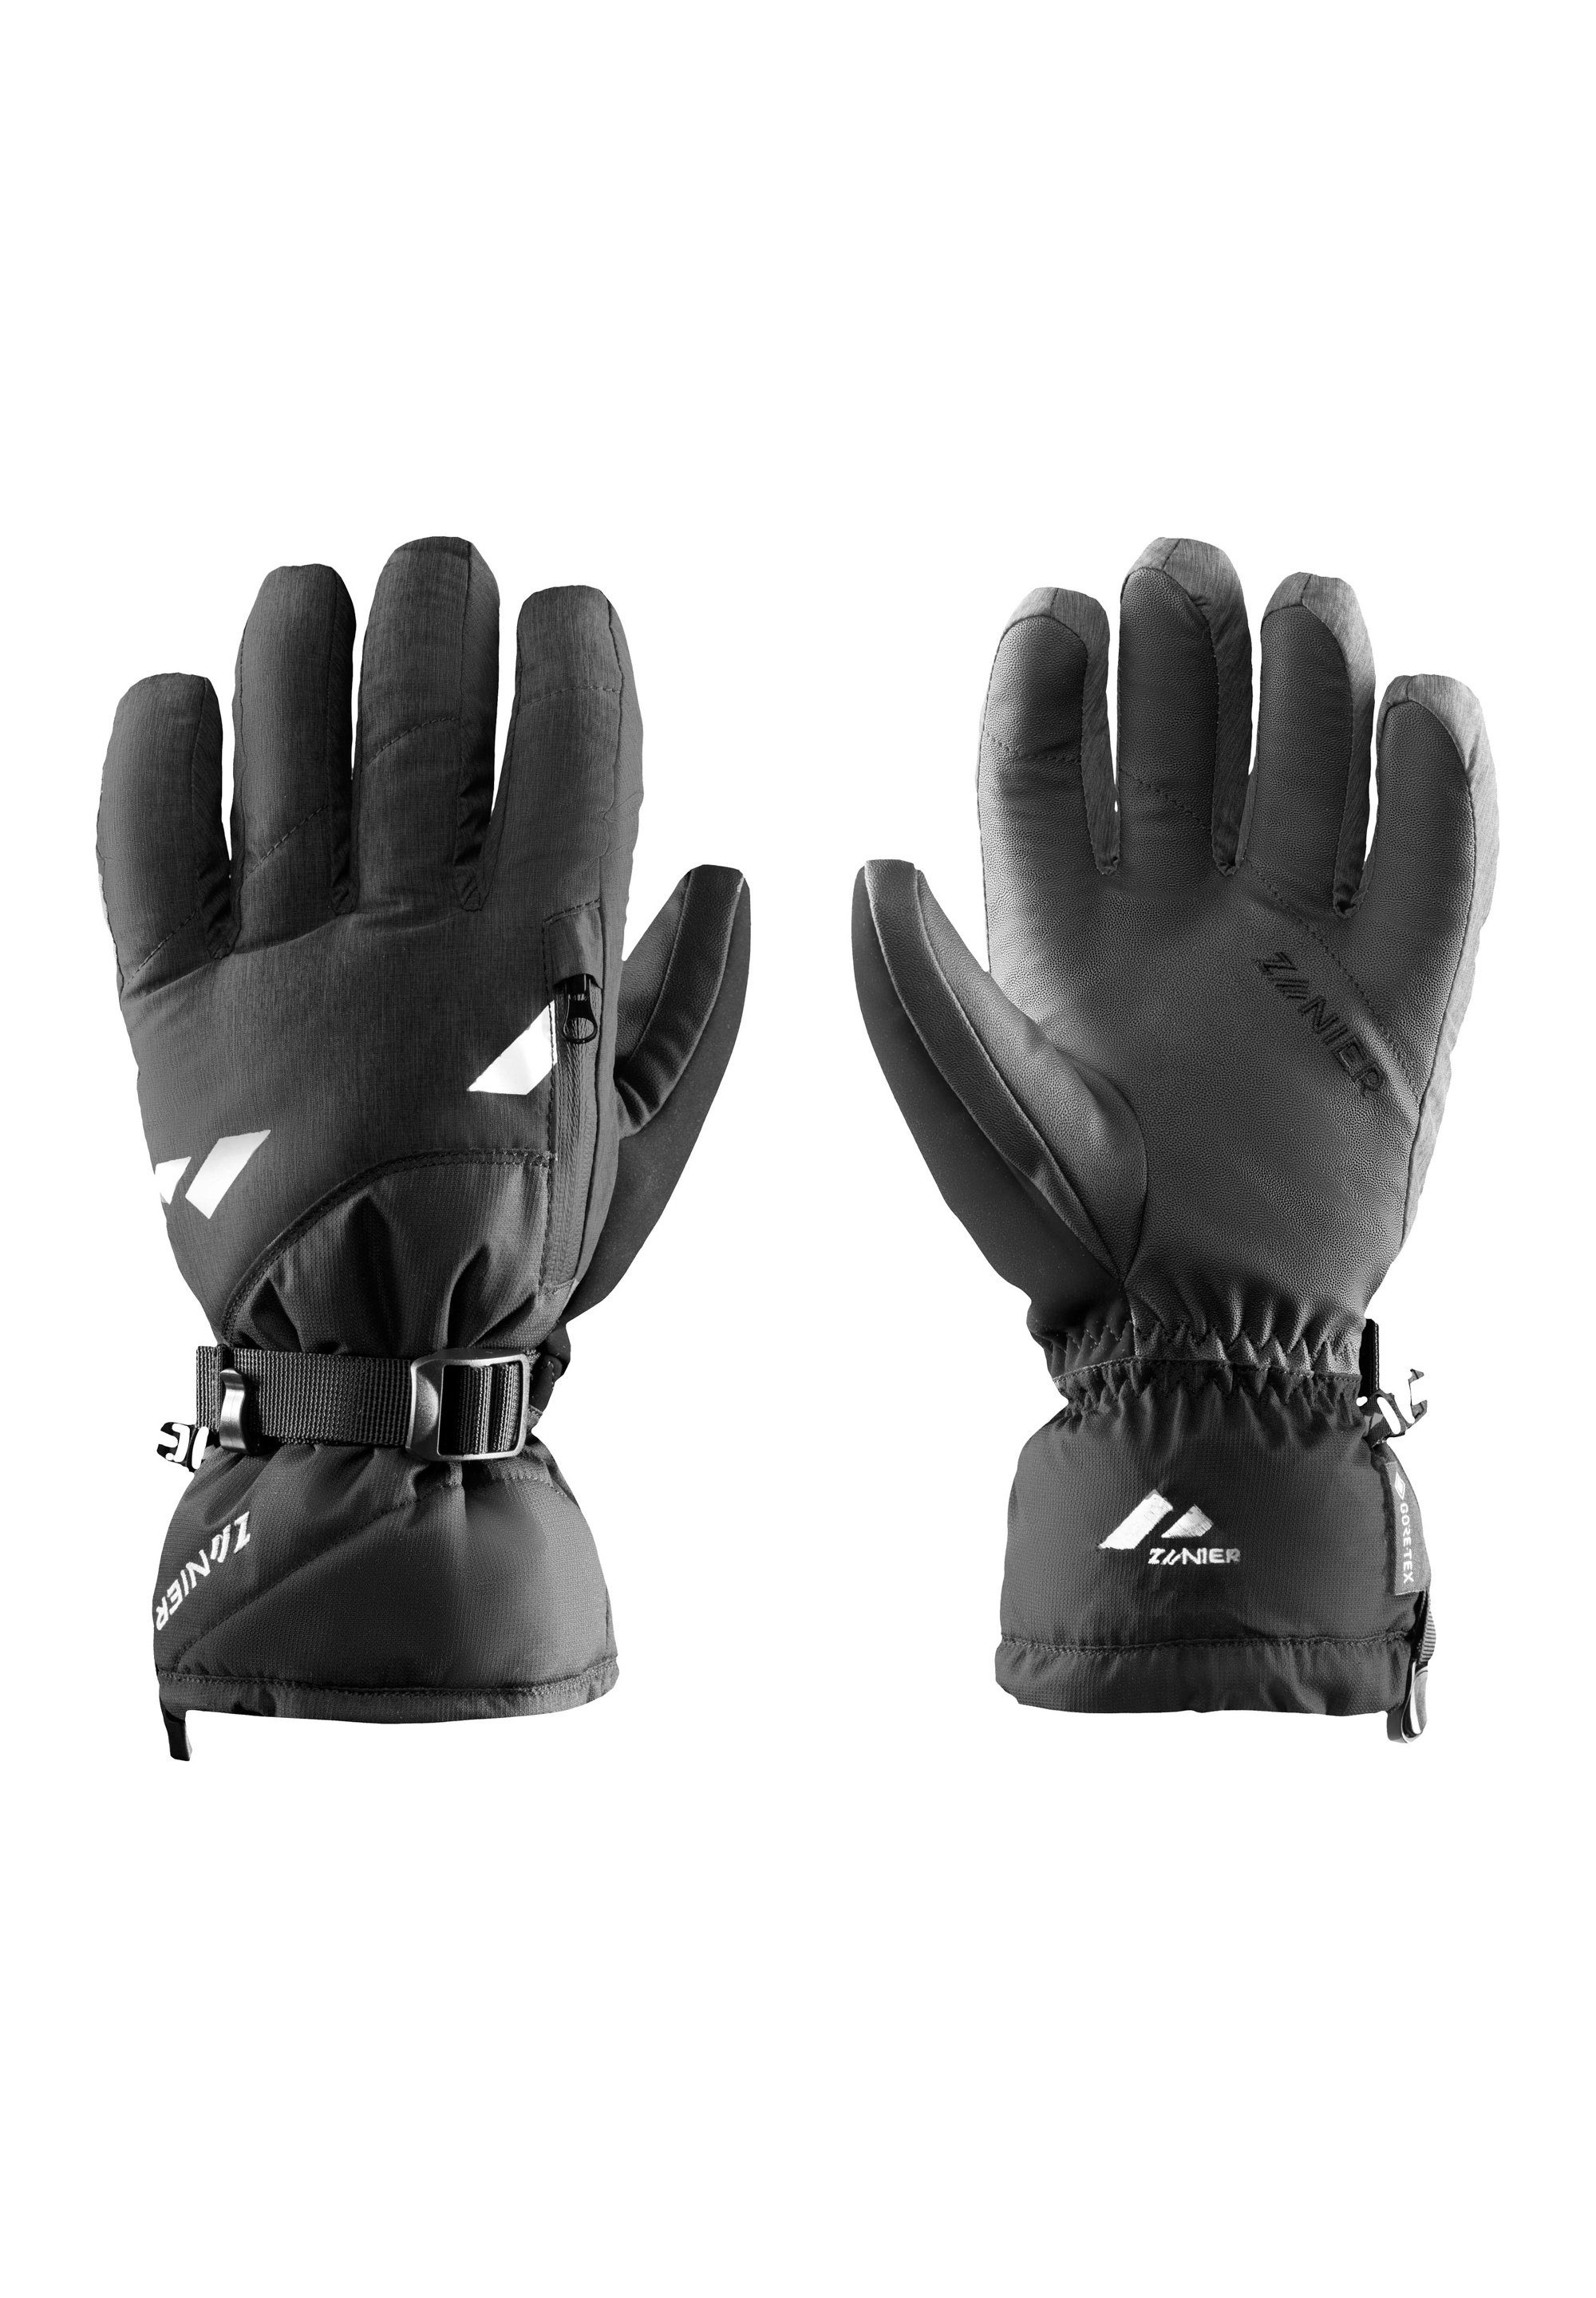 Zanier Multisporthandschuhe on black gloves focus We RIDE.GTX